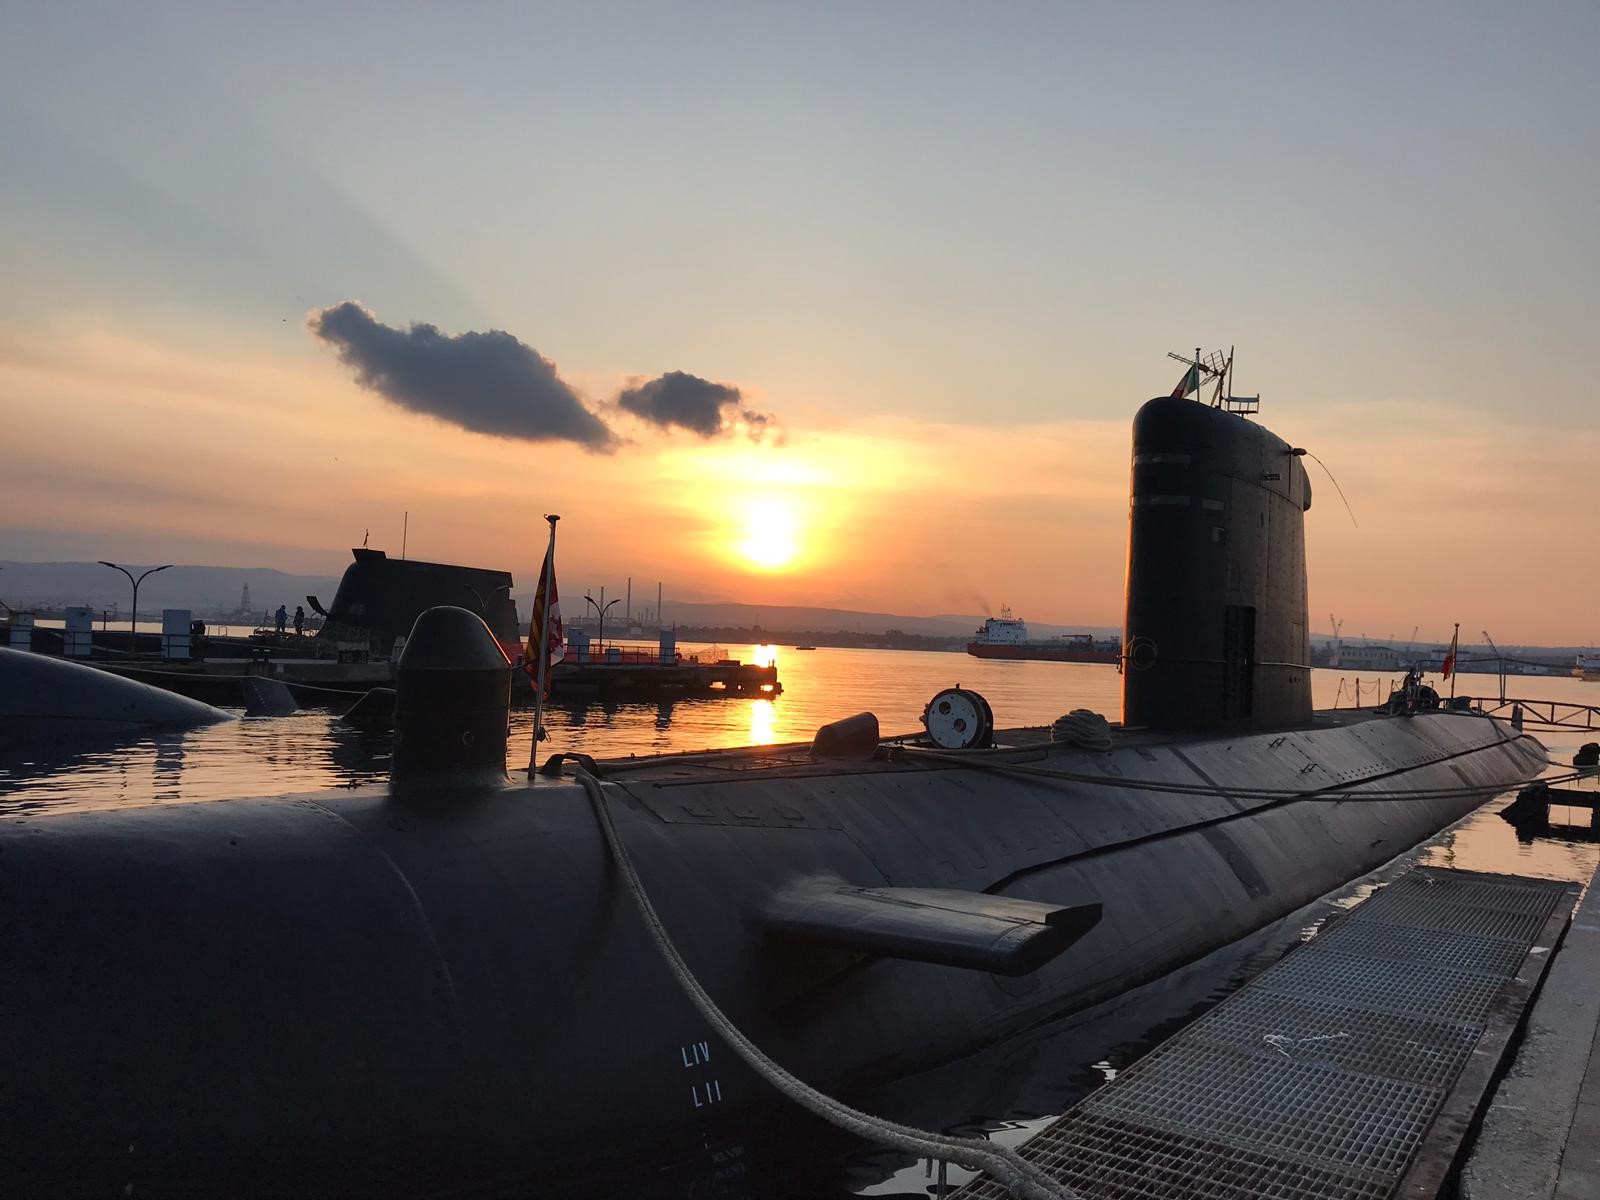 El submarino “Tramontana” hace escala en el puerto italiano de Augusta